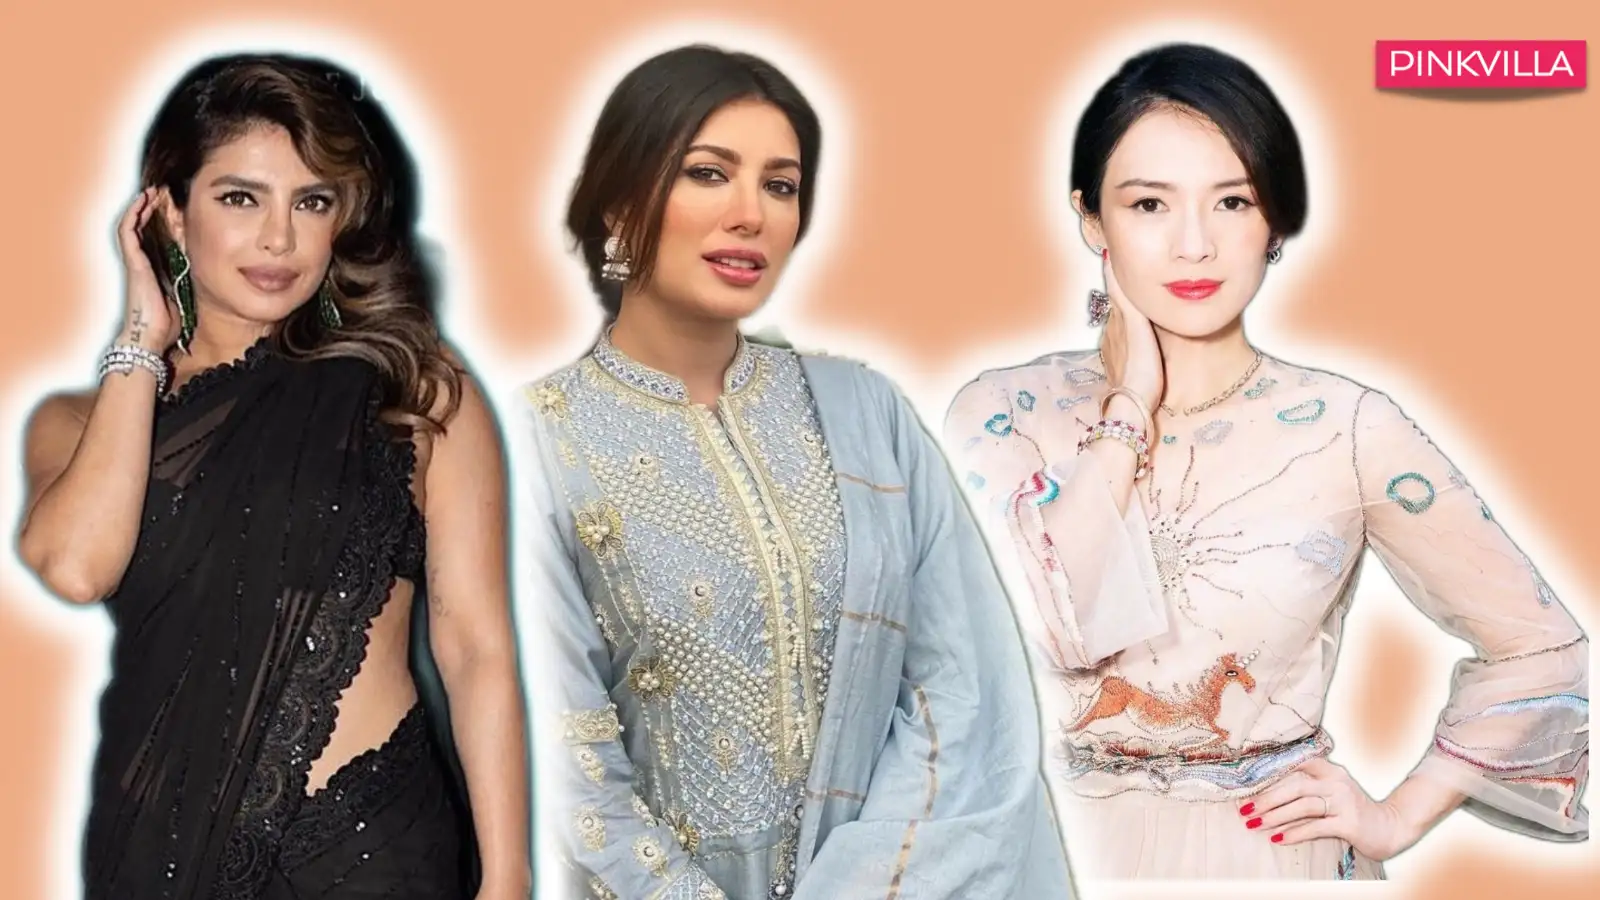 25 Most Beautiful Asian Women with Dazzling Personalities PINKVILLA photo